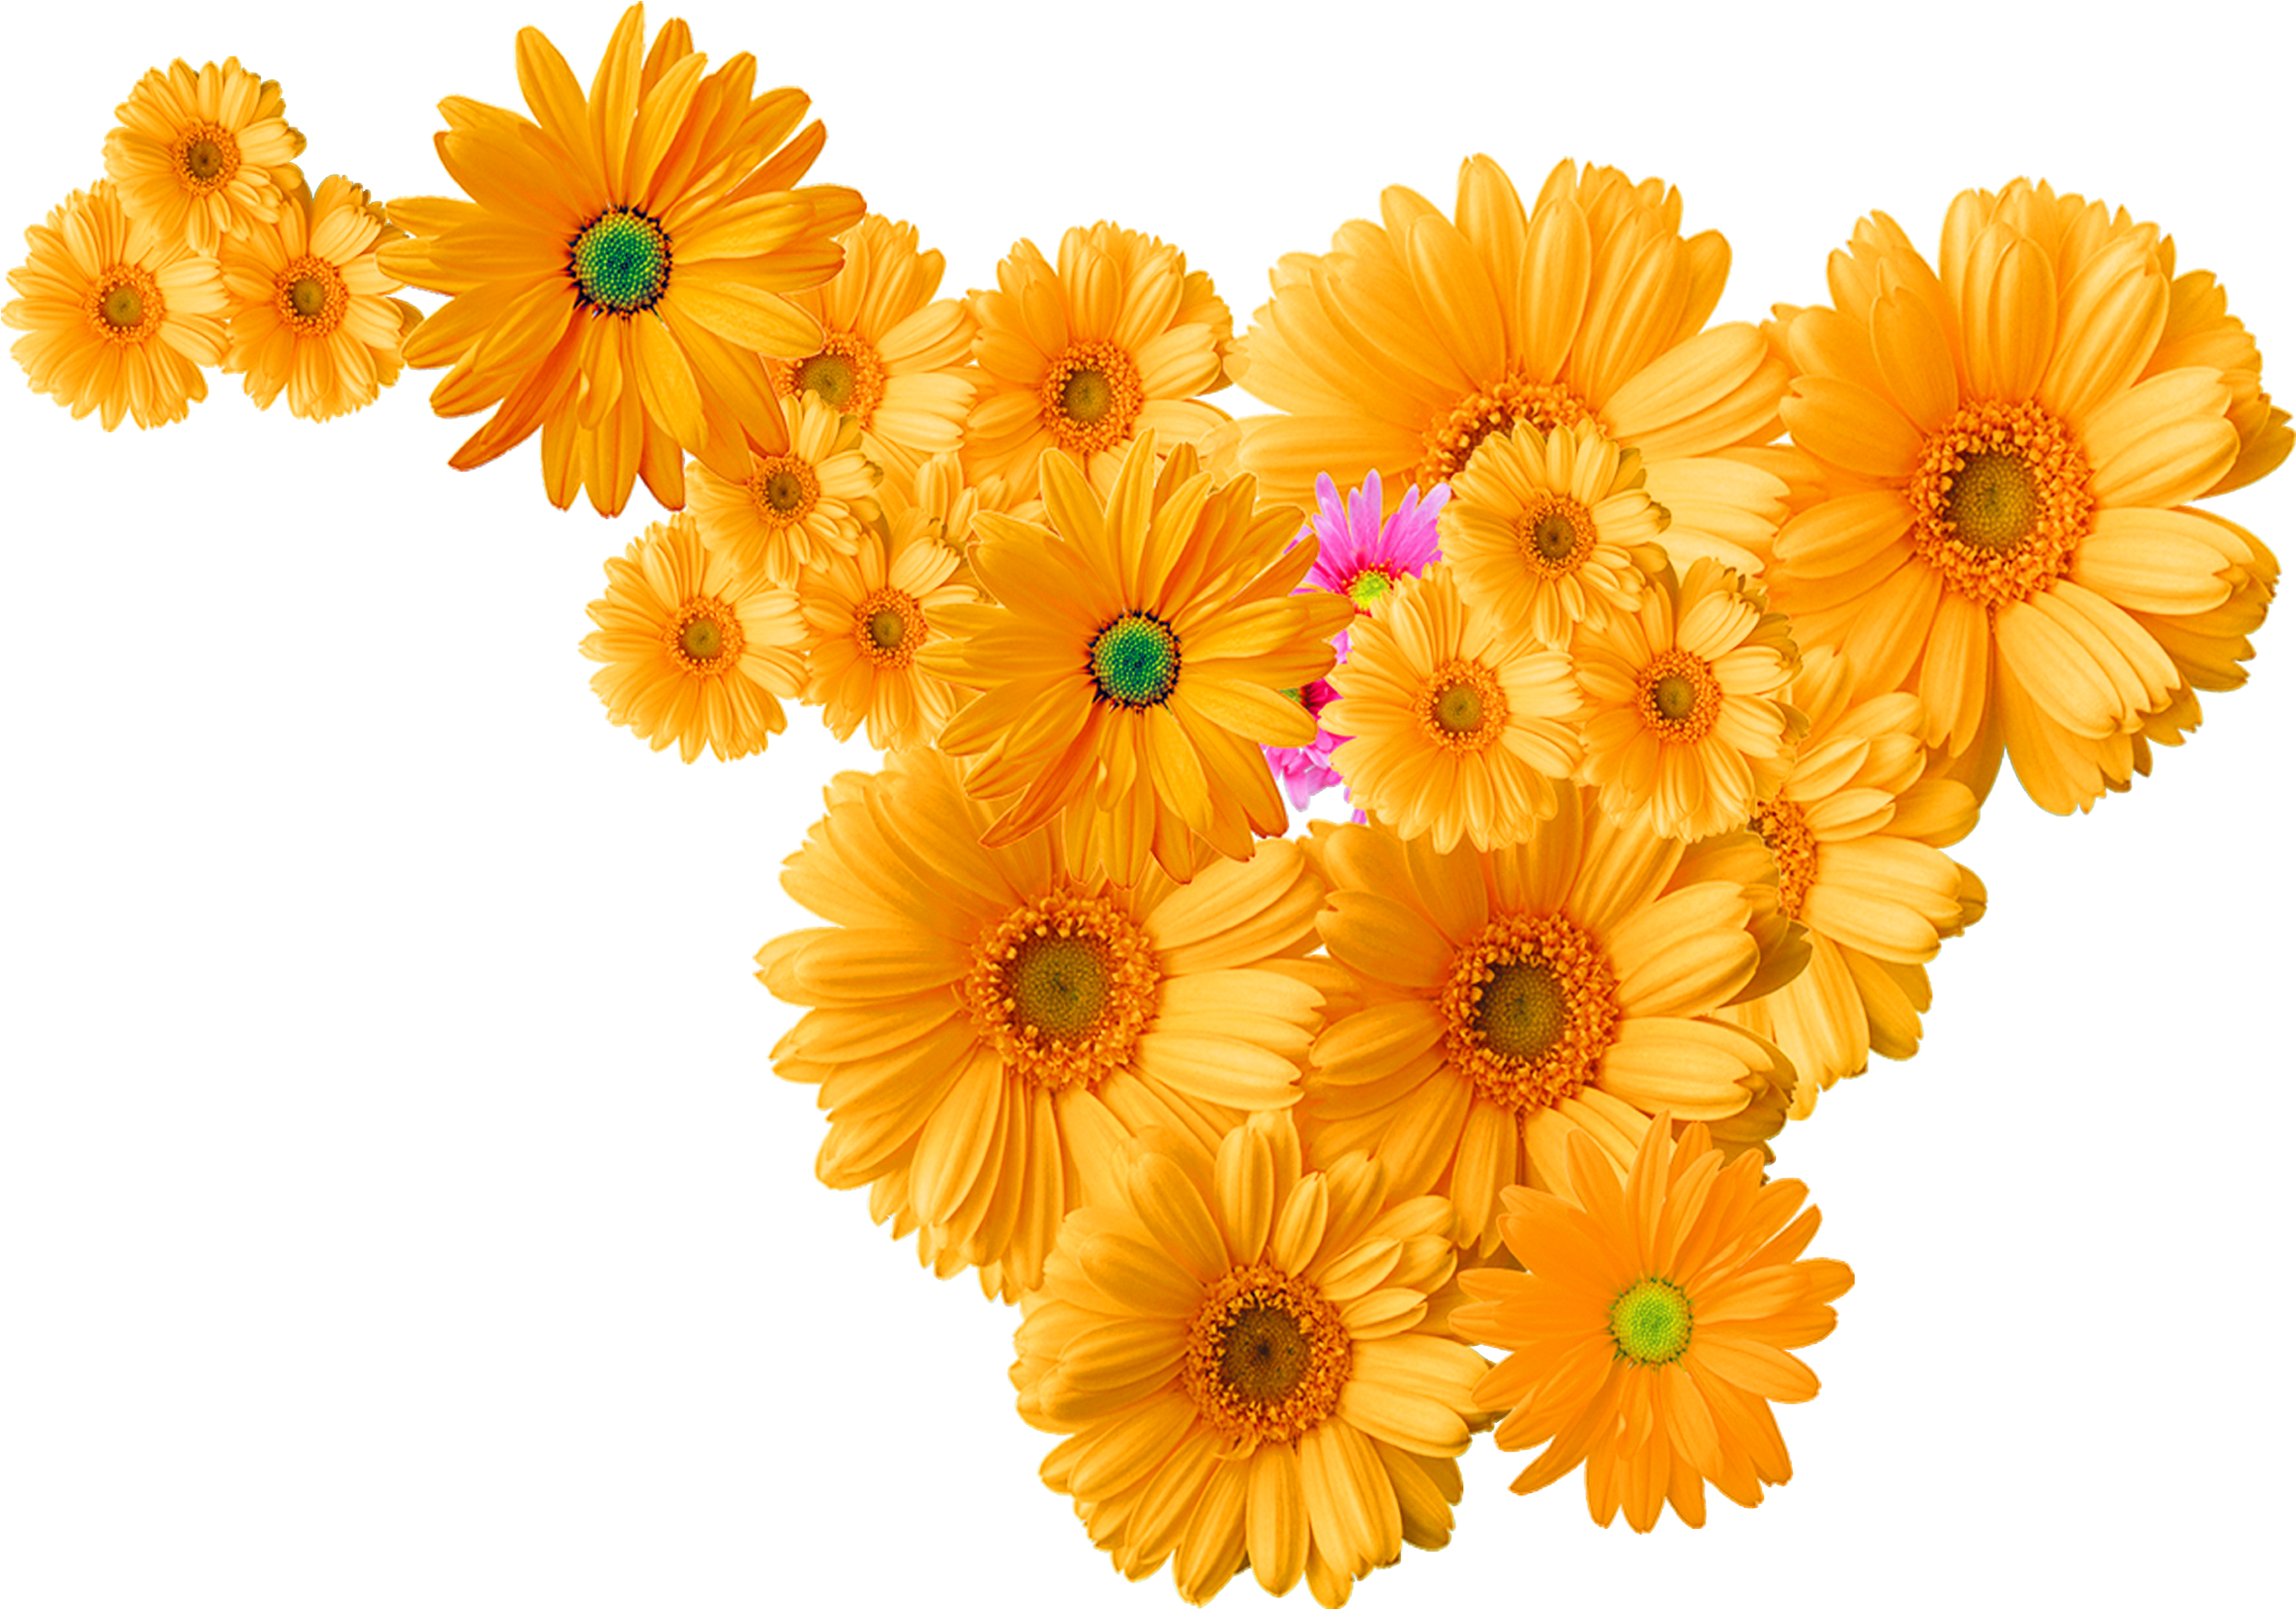 Icona crisantemo, decorazione crisantemo giallo